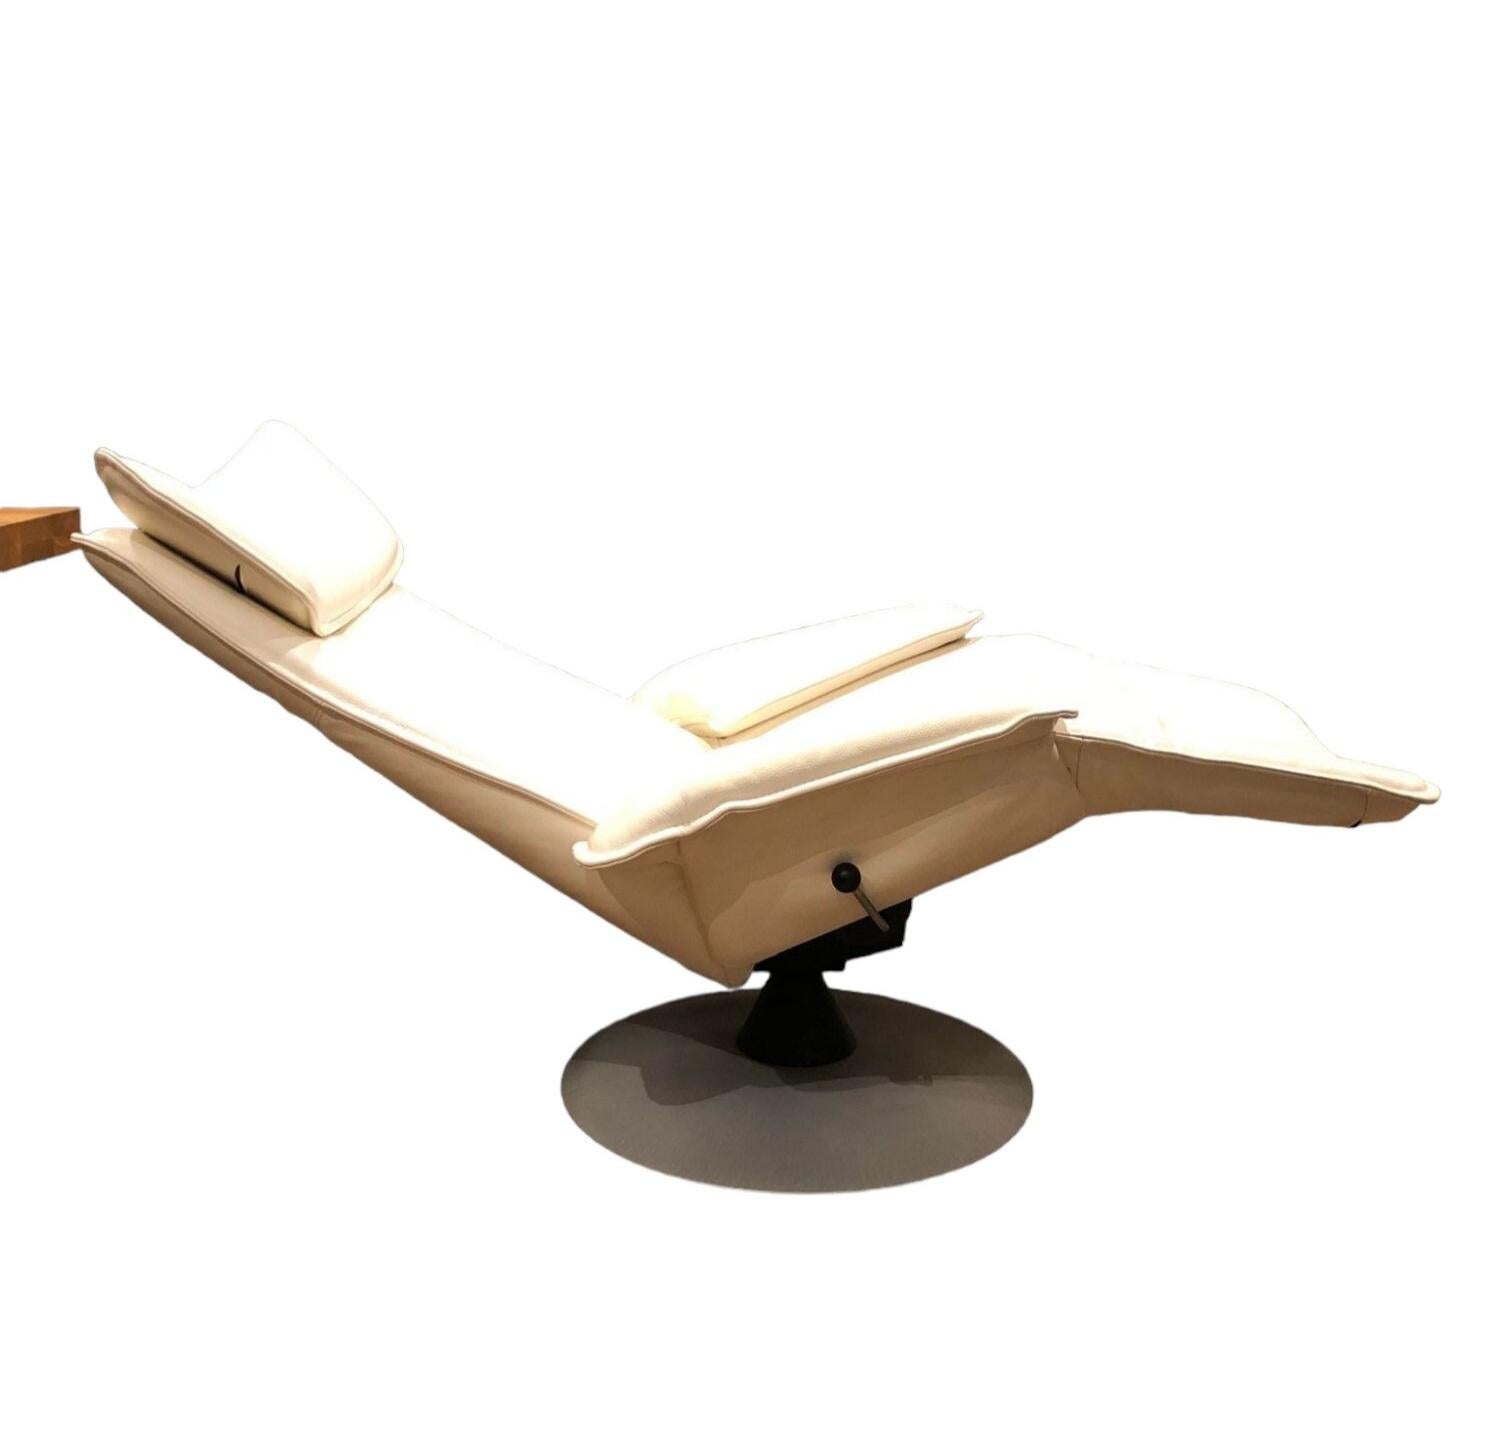 Fauteuil Unic en cuir ivoire.
Ce fauteuil dispose de nombreux réglages, tels que l'inclinaison du dossier, l'inclinaison de la nuque et l'oreiller réglable pour la tête. Il peut pivoter à 360 degrés, ce qui vous donne l'impression de léviter sur un